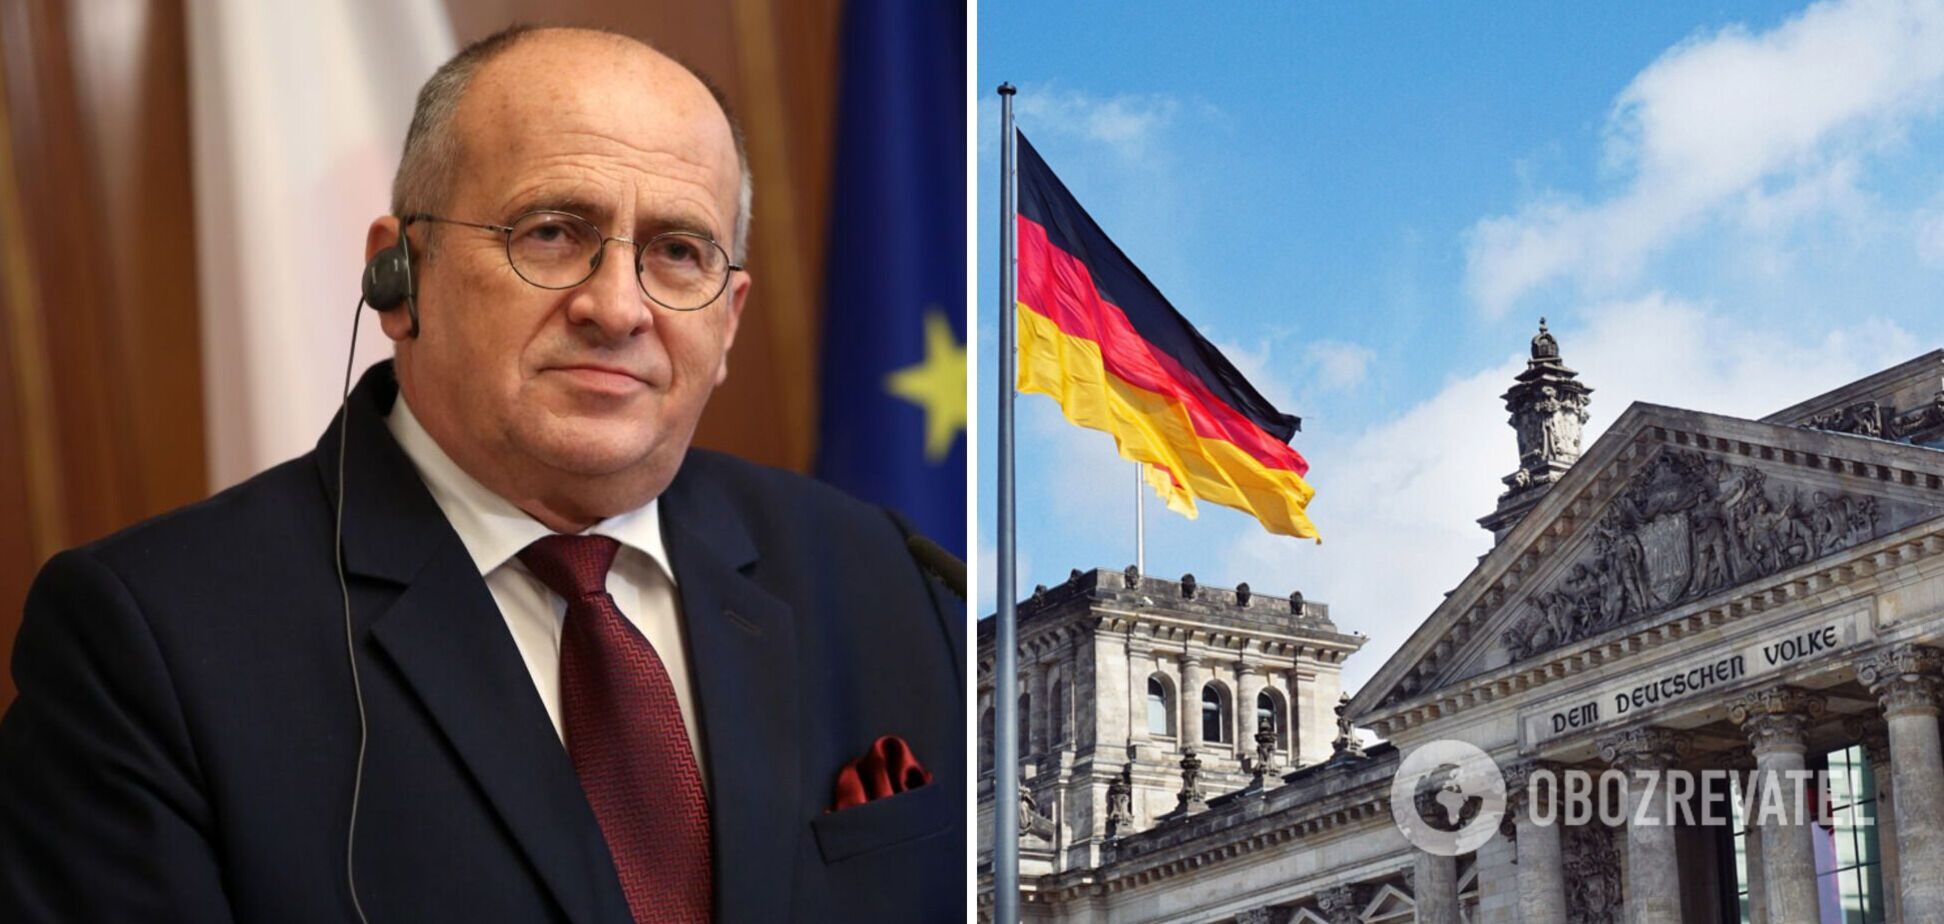 Глава МИД Польши: Германия тянет с помощью Украины, поскольку надеется на возобновление отношений с РФ